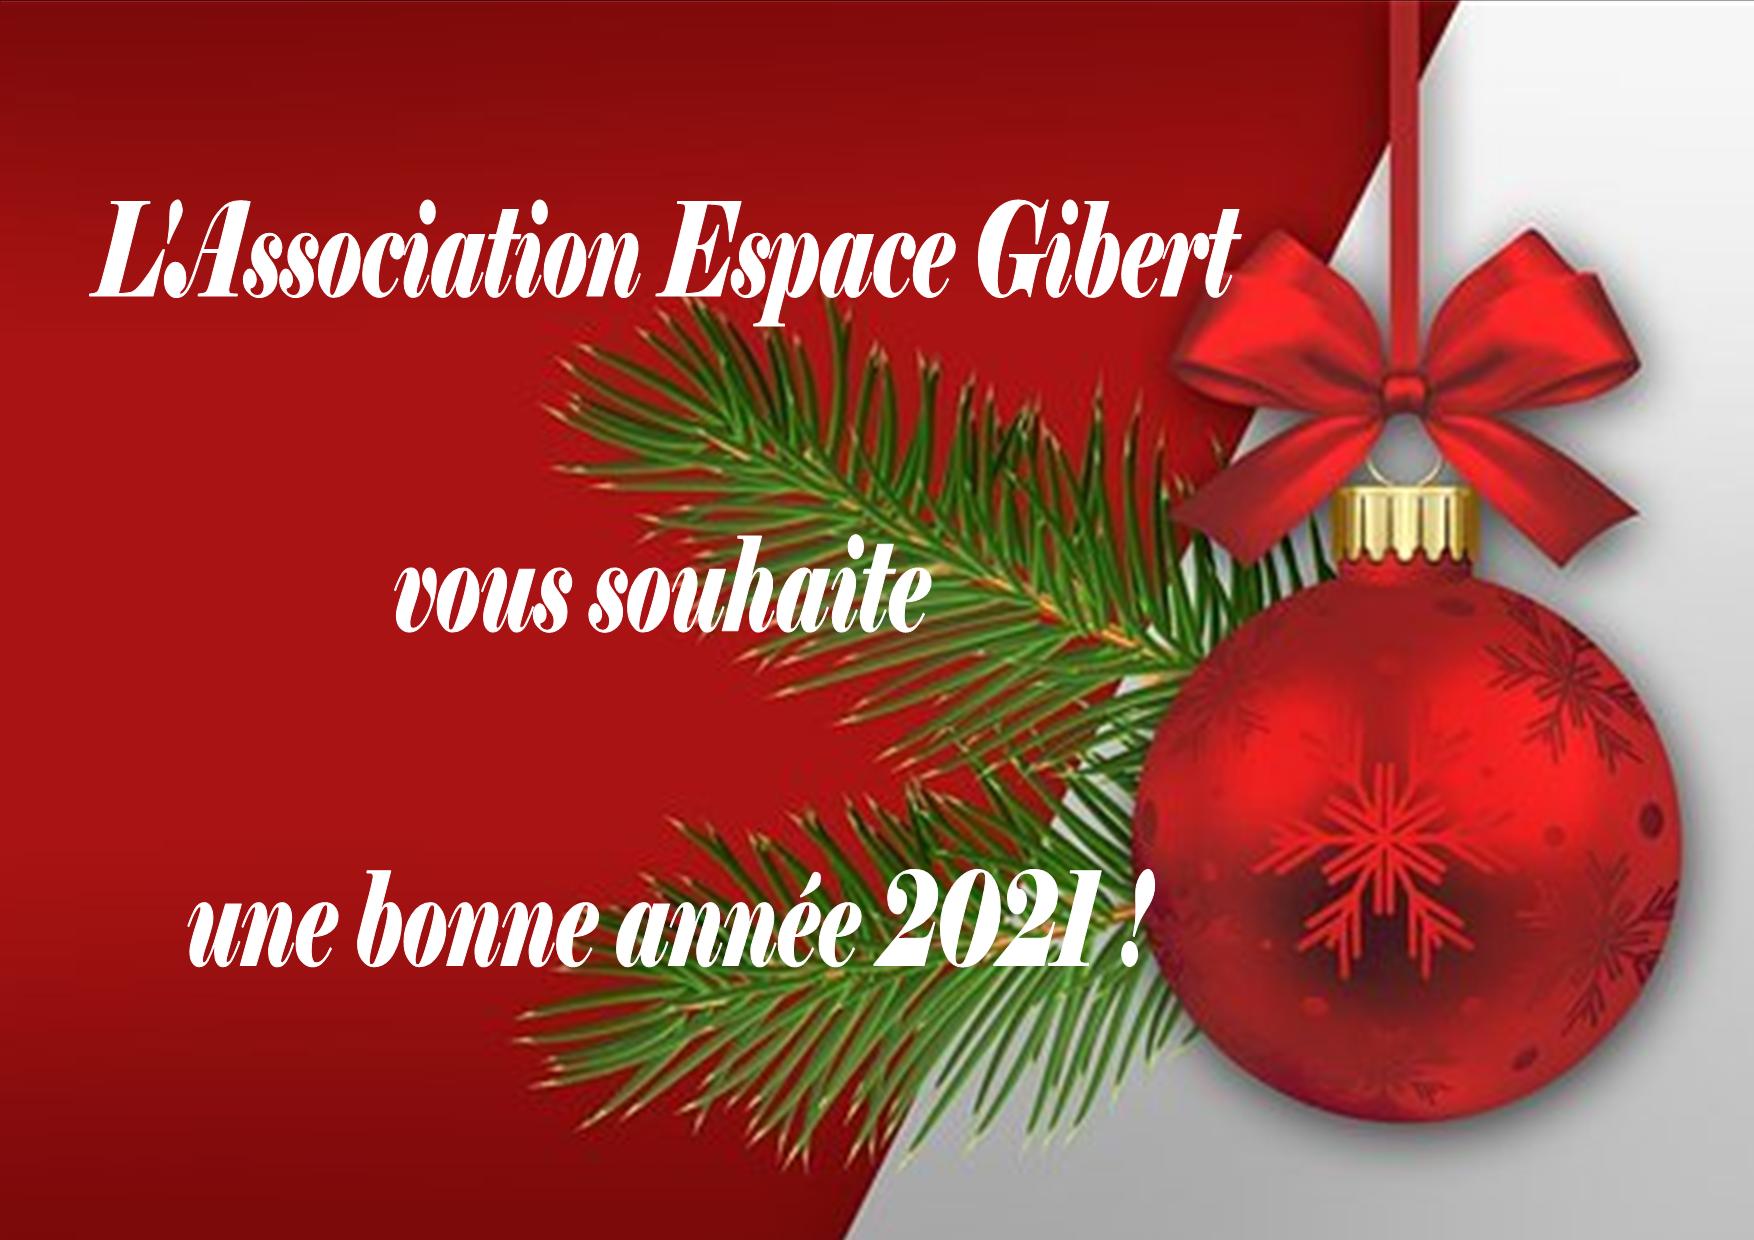 L'Association Espace Gibert vous souhaite une très heureuse année 2021